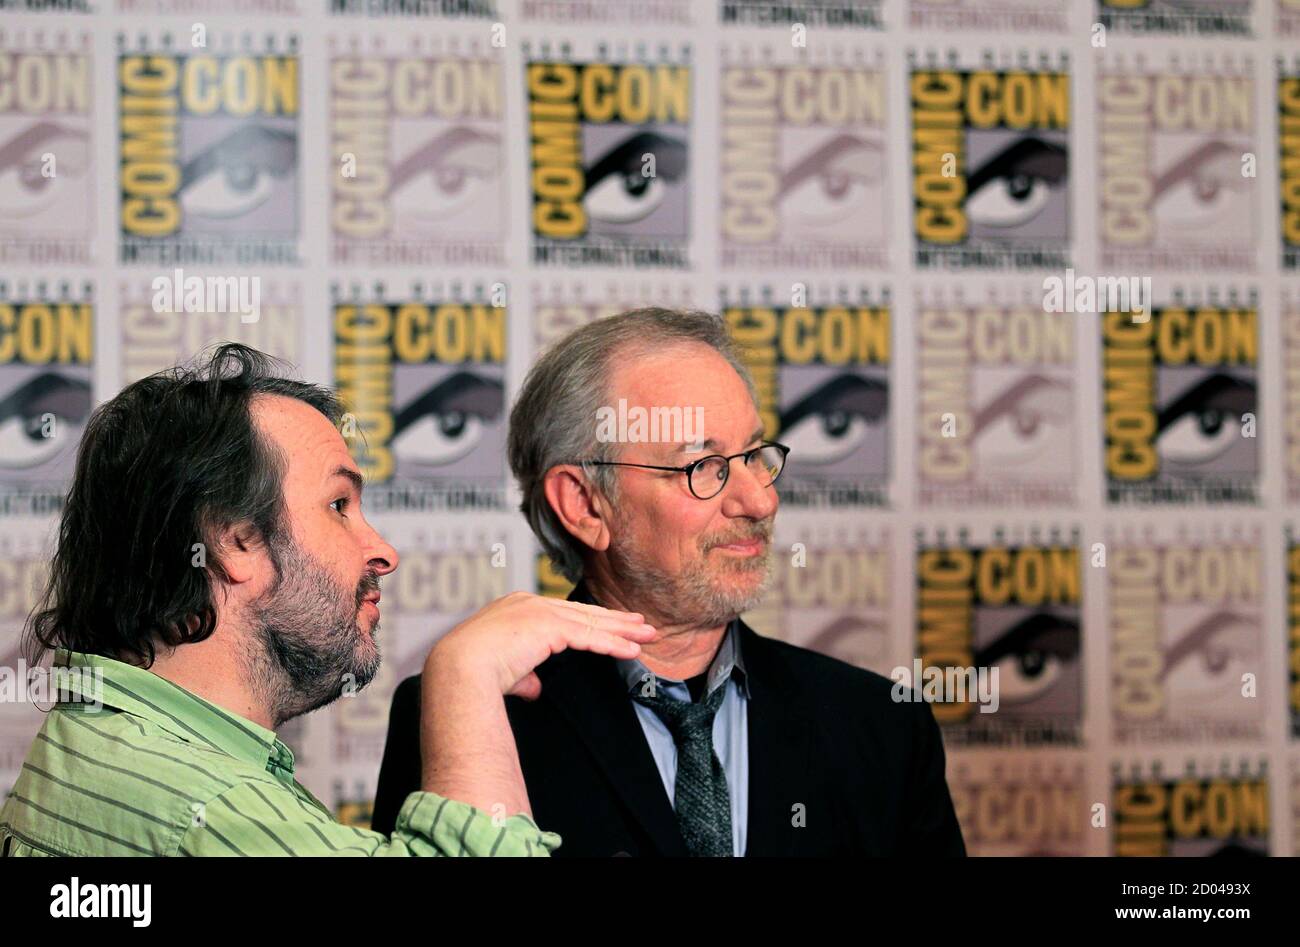 Regisseur Steven Spielberg und Produzent Peter Jackson (L) sprechen über ihre kommenden Film "Die Abenteuer von Tin Tin" bei der pop-Kultur-Veranstaltung Comic Con in San Diego, Kalifornien 22. Juli 2011.   REUTERS/Mike Blake (Vereinigte Staaten - Tags: ENTERTAINMENT Gesellschaft Profil) Stockfoto